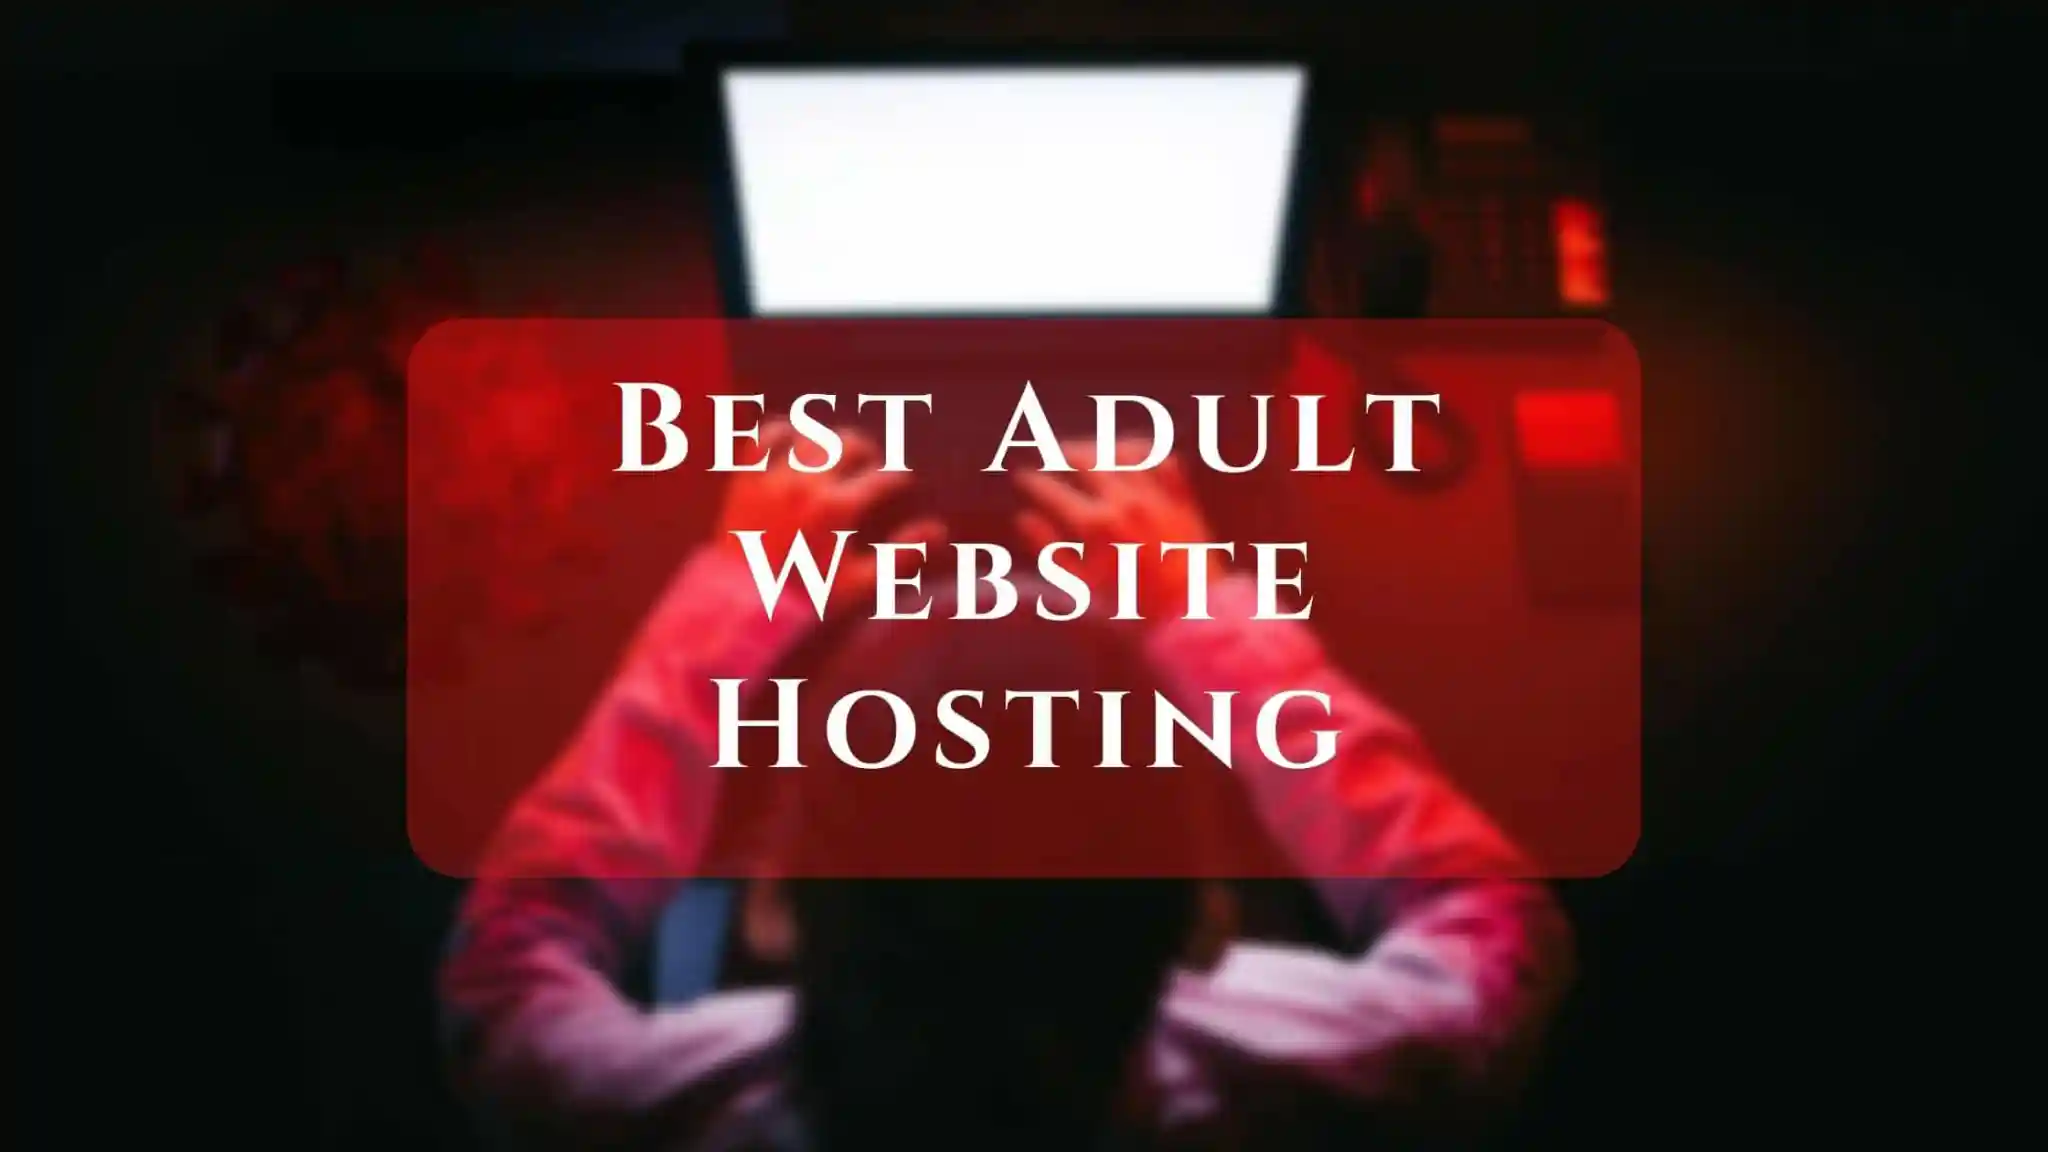 Best Adult Website Hosting